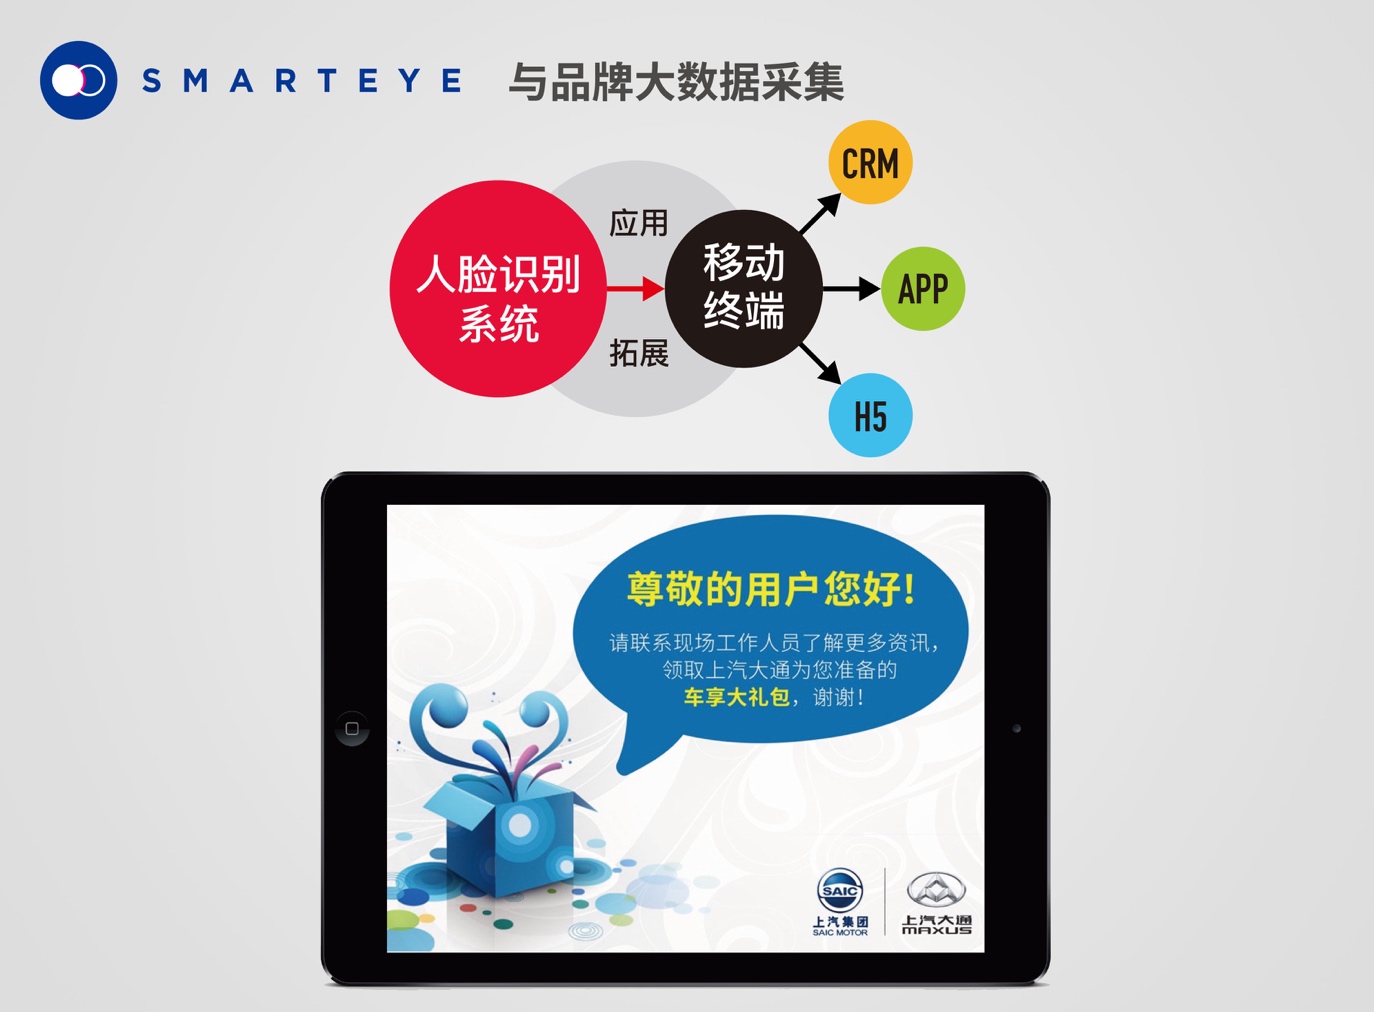 SmartEye智能影像识别营销系统